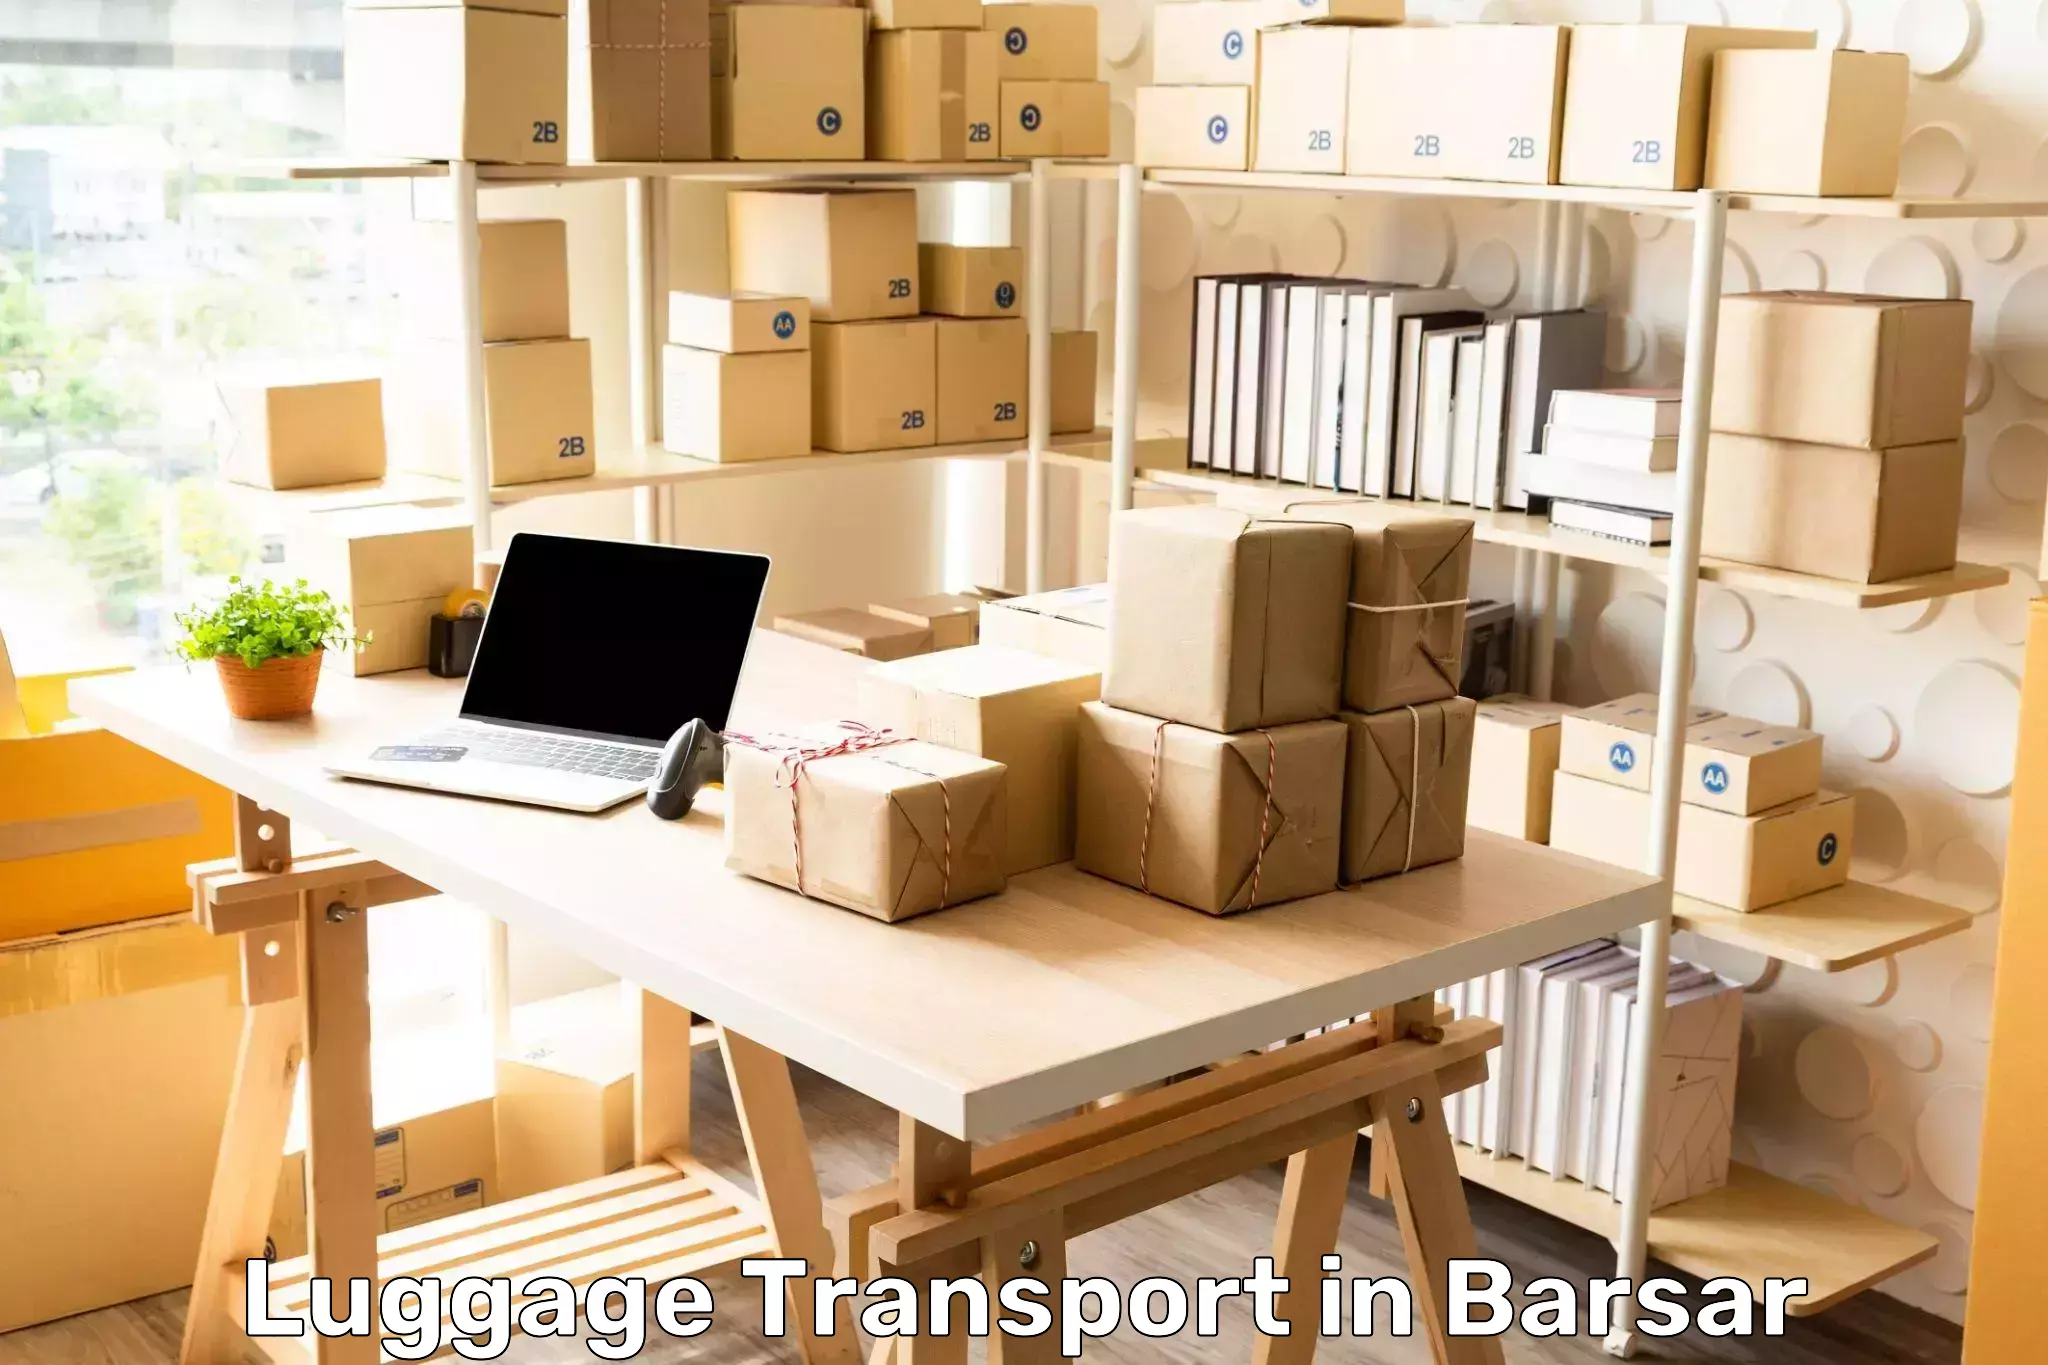 Baggage transport innovation in Barsar